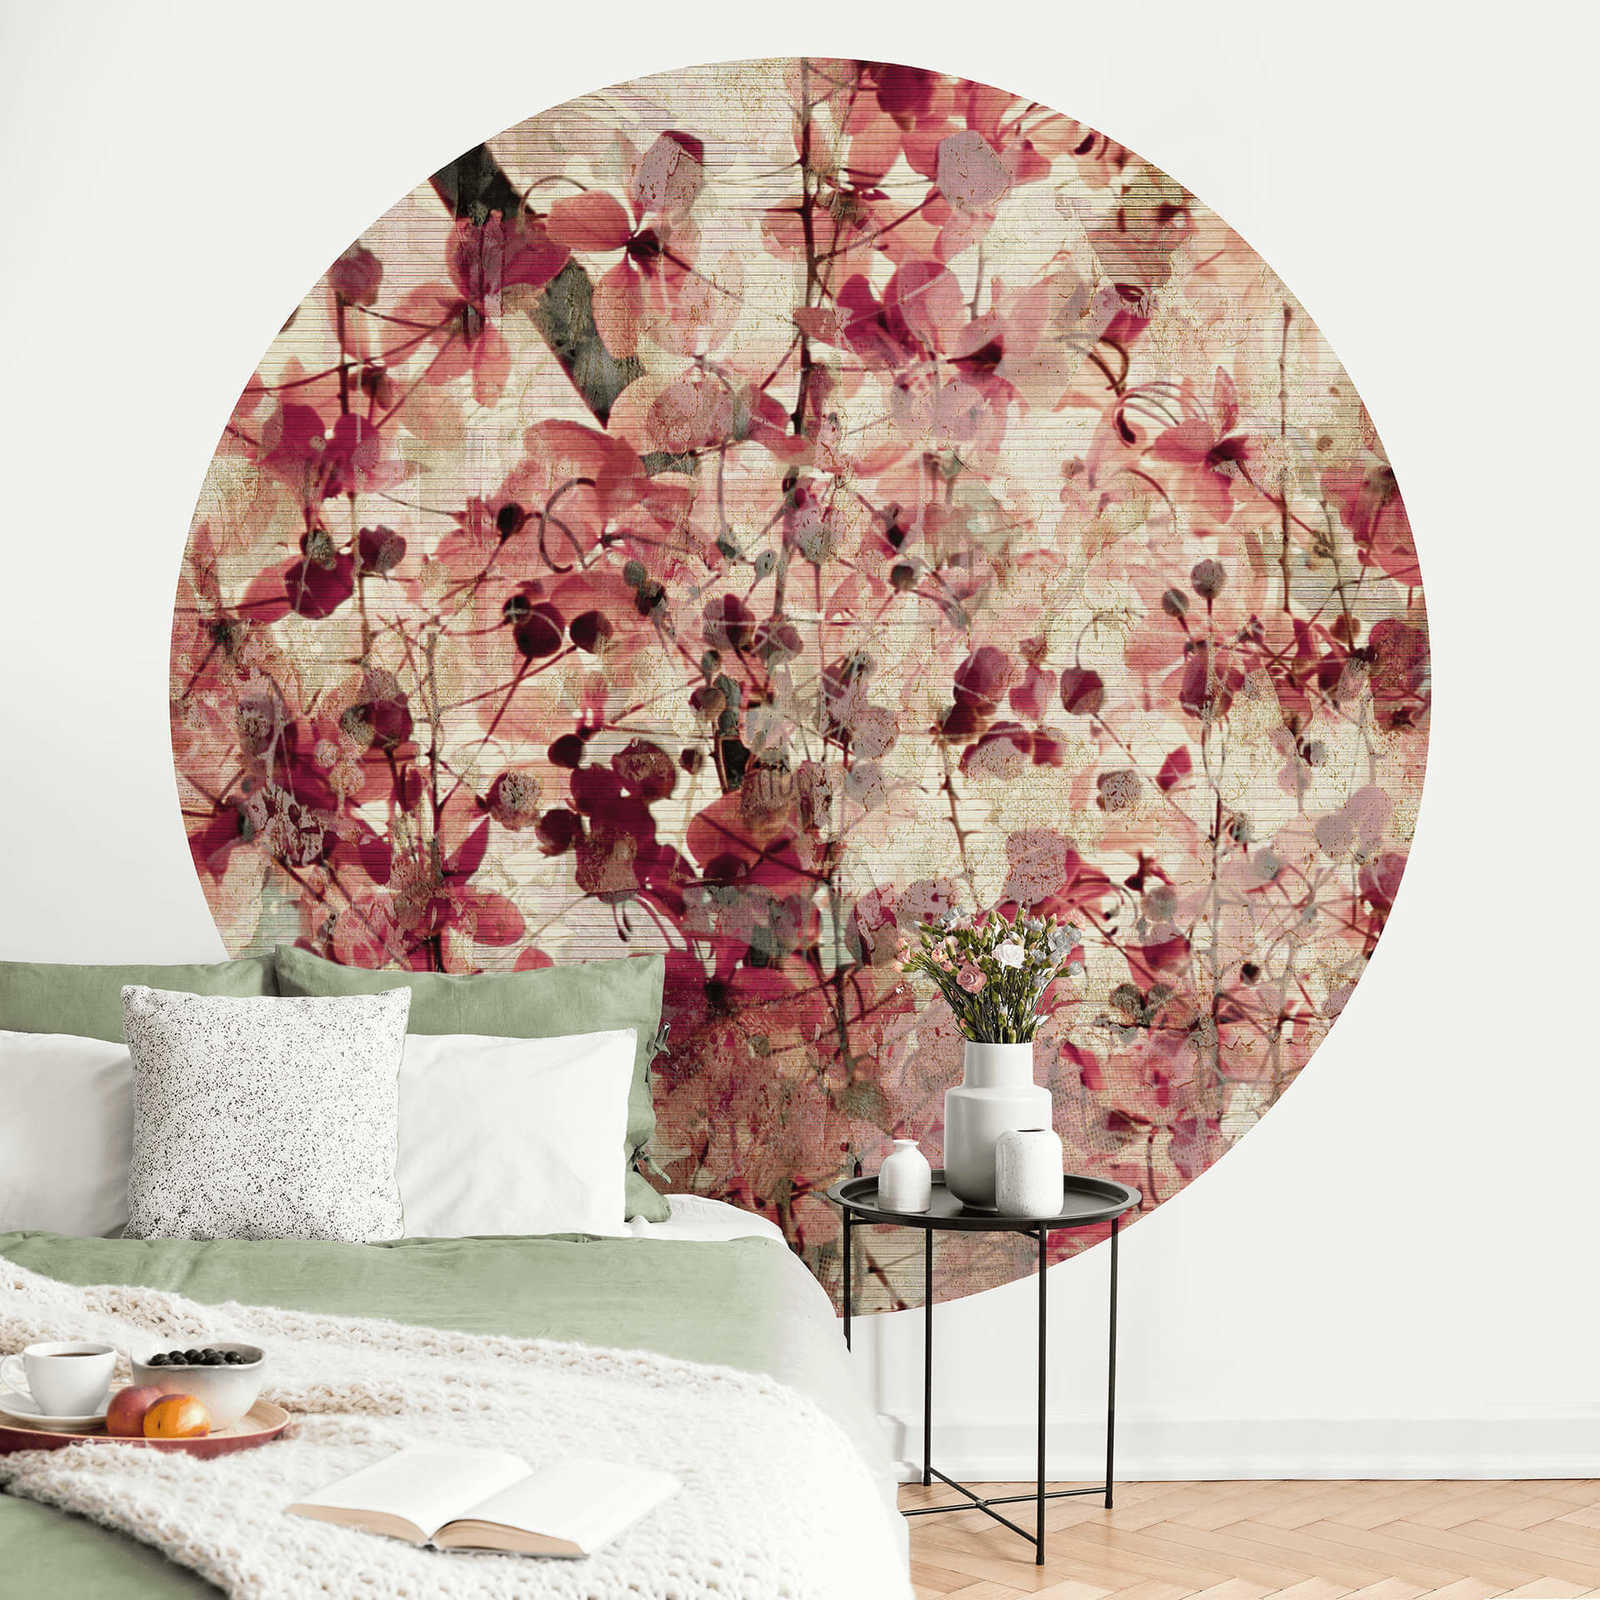             Papier peint panoramique rond motif floral style vintage
        